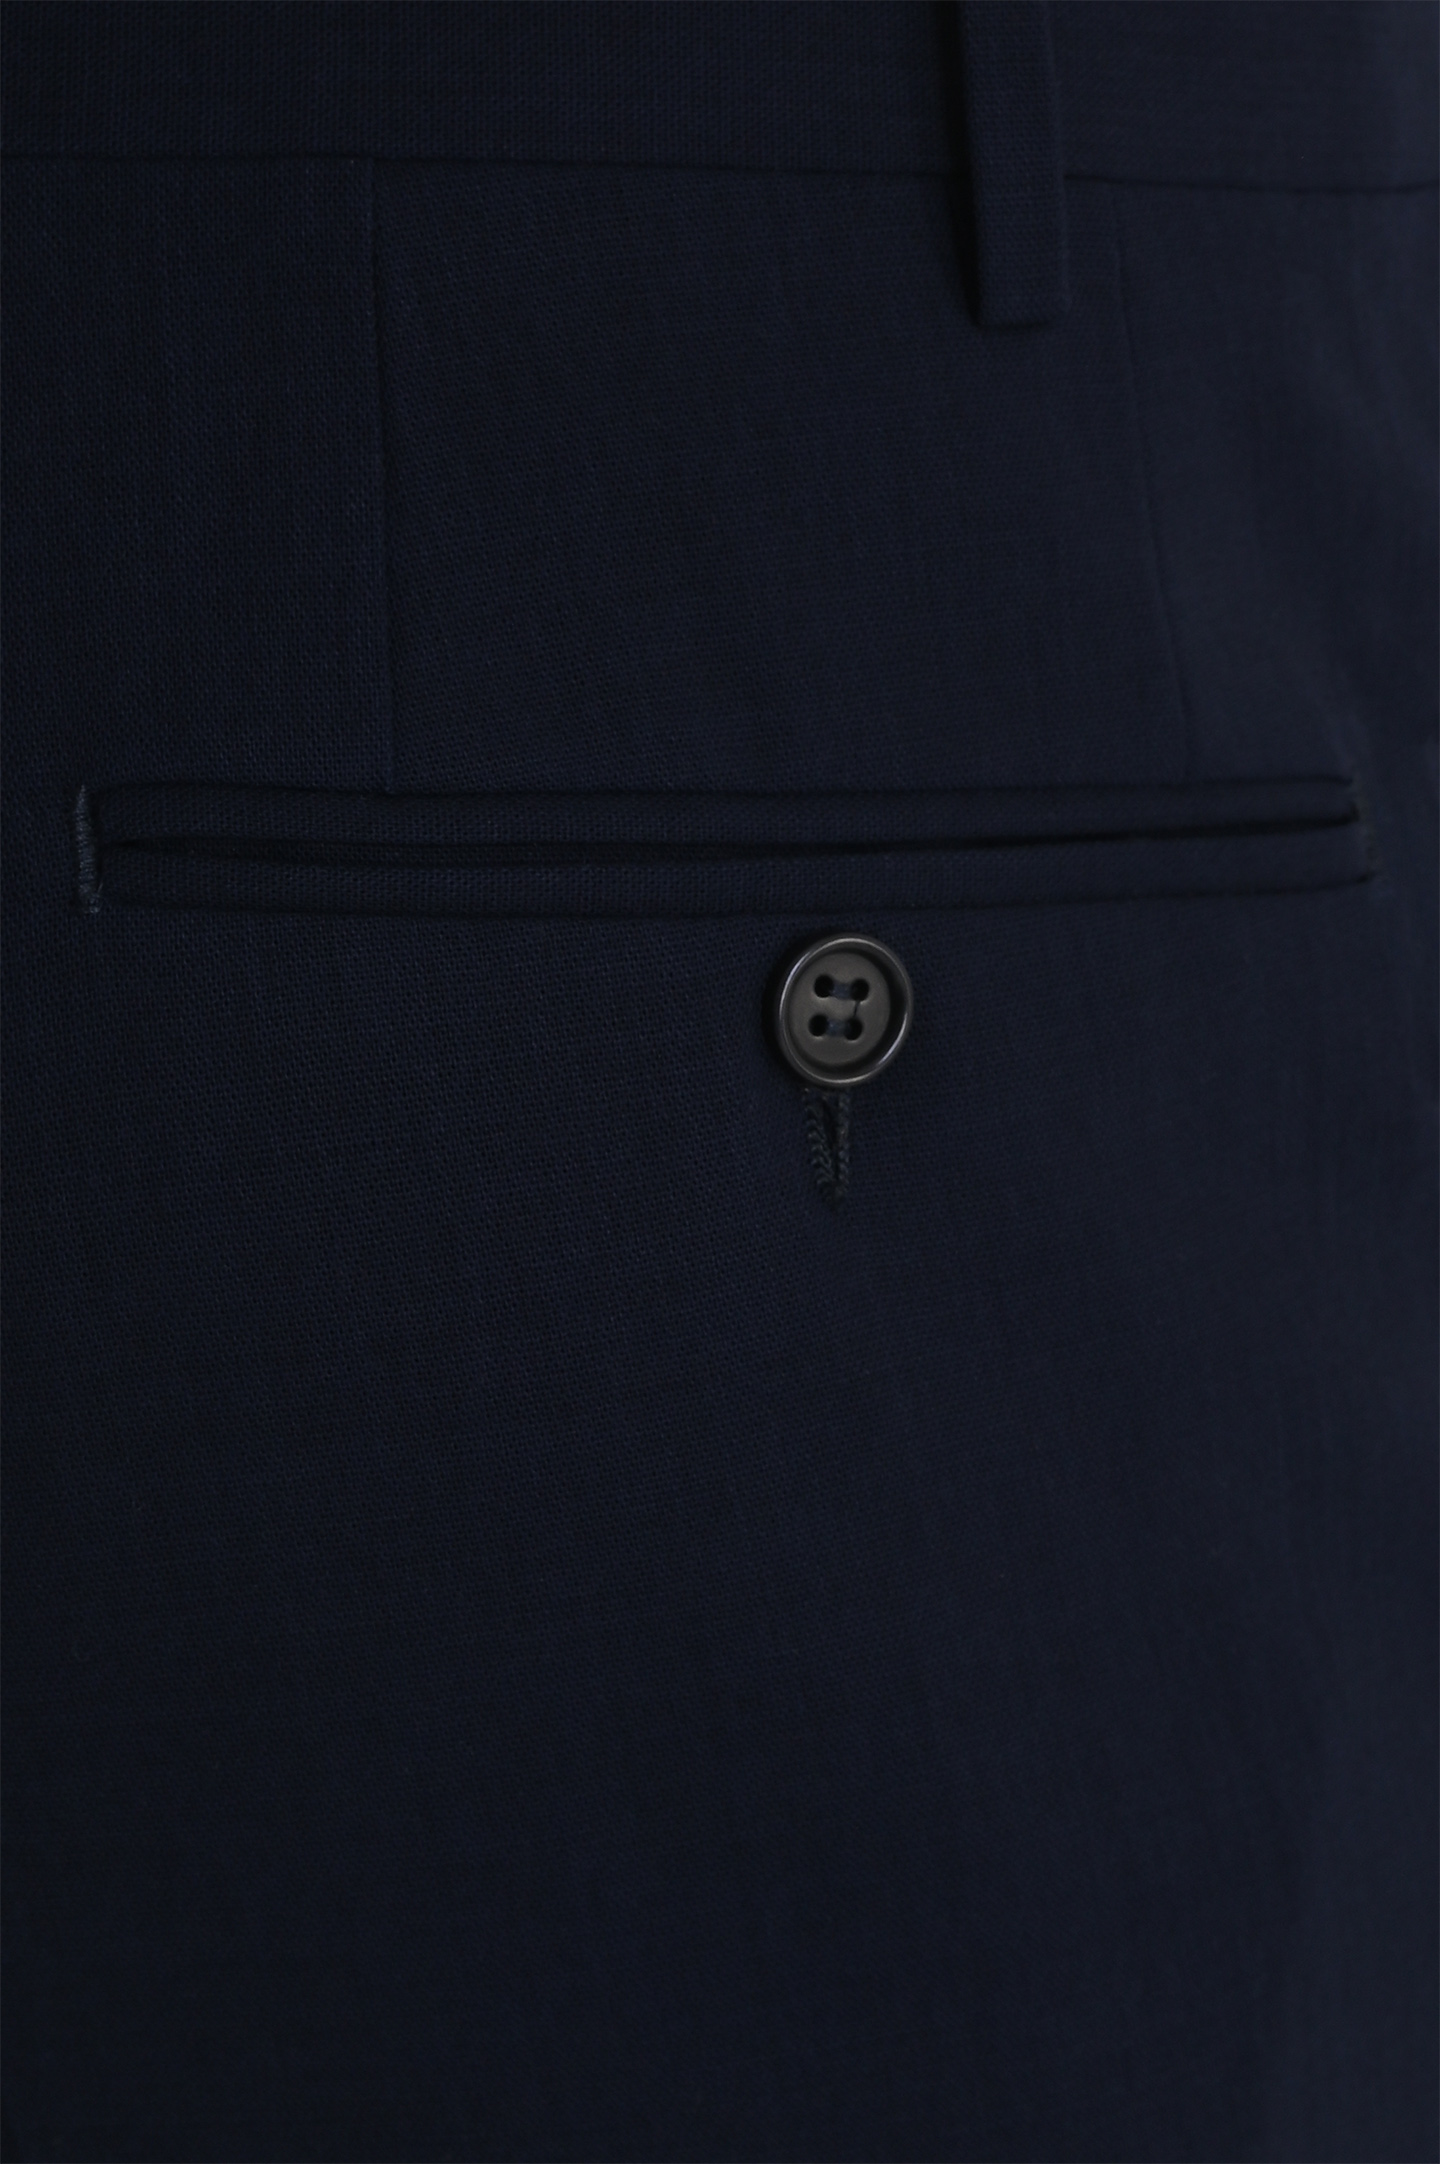 Классические брюки из шерсти CANALI AR05002 71019, цвет: Темно-синий, Мужской